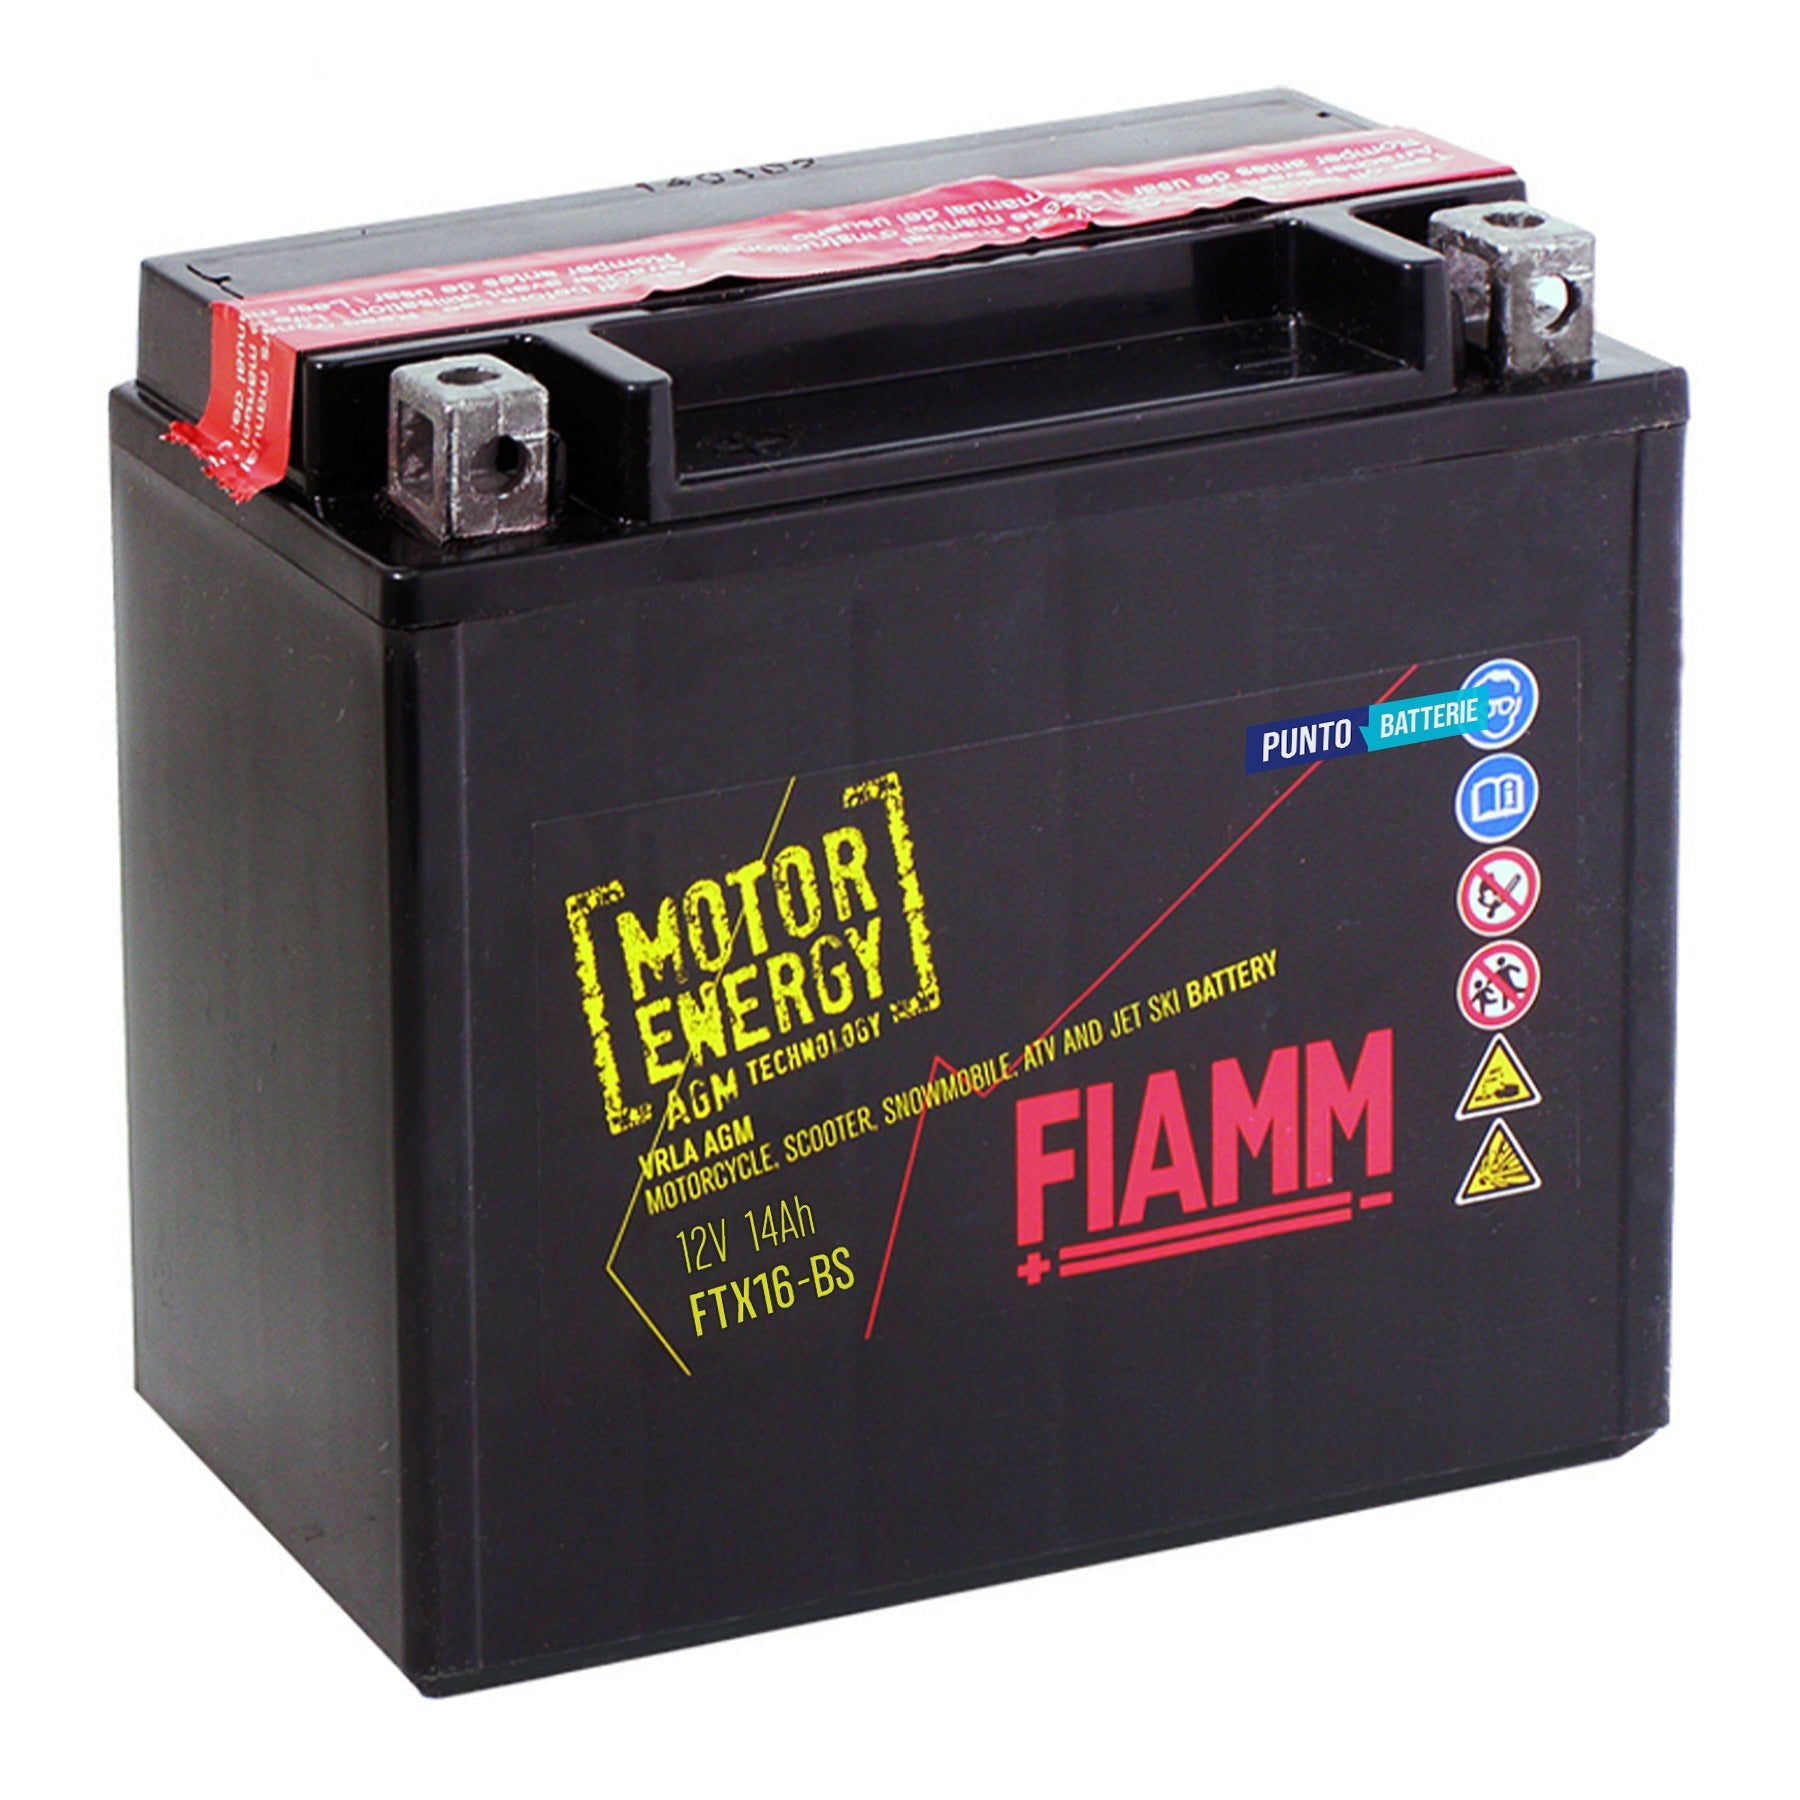 Batteria originale Fiamm Motor Energy AGM FTX16-BS, dimensioni 150 x 87 x 161, polo positivo a sinistra, 12 volt, 14 amperora, 210 ampere. Batteria per moto, scooter e powersport.